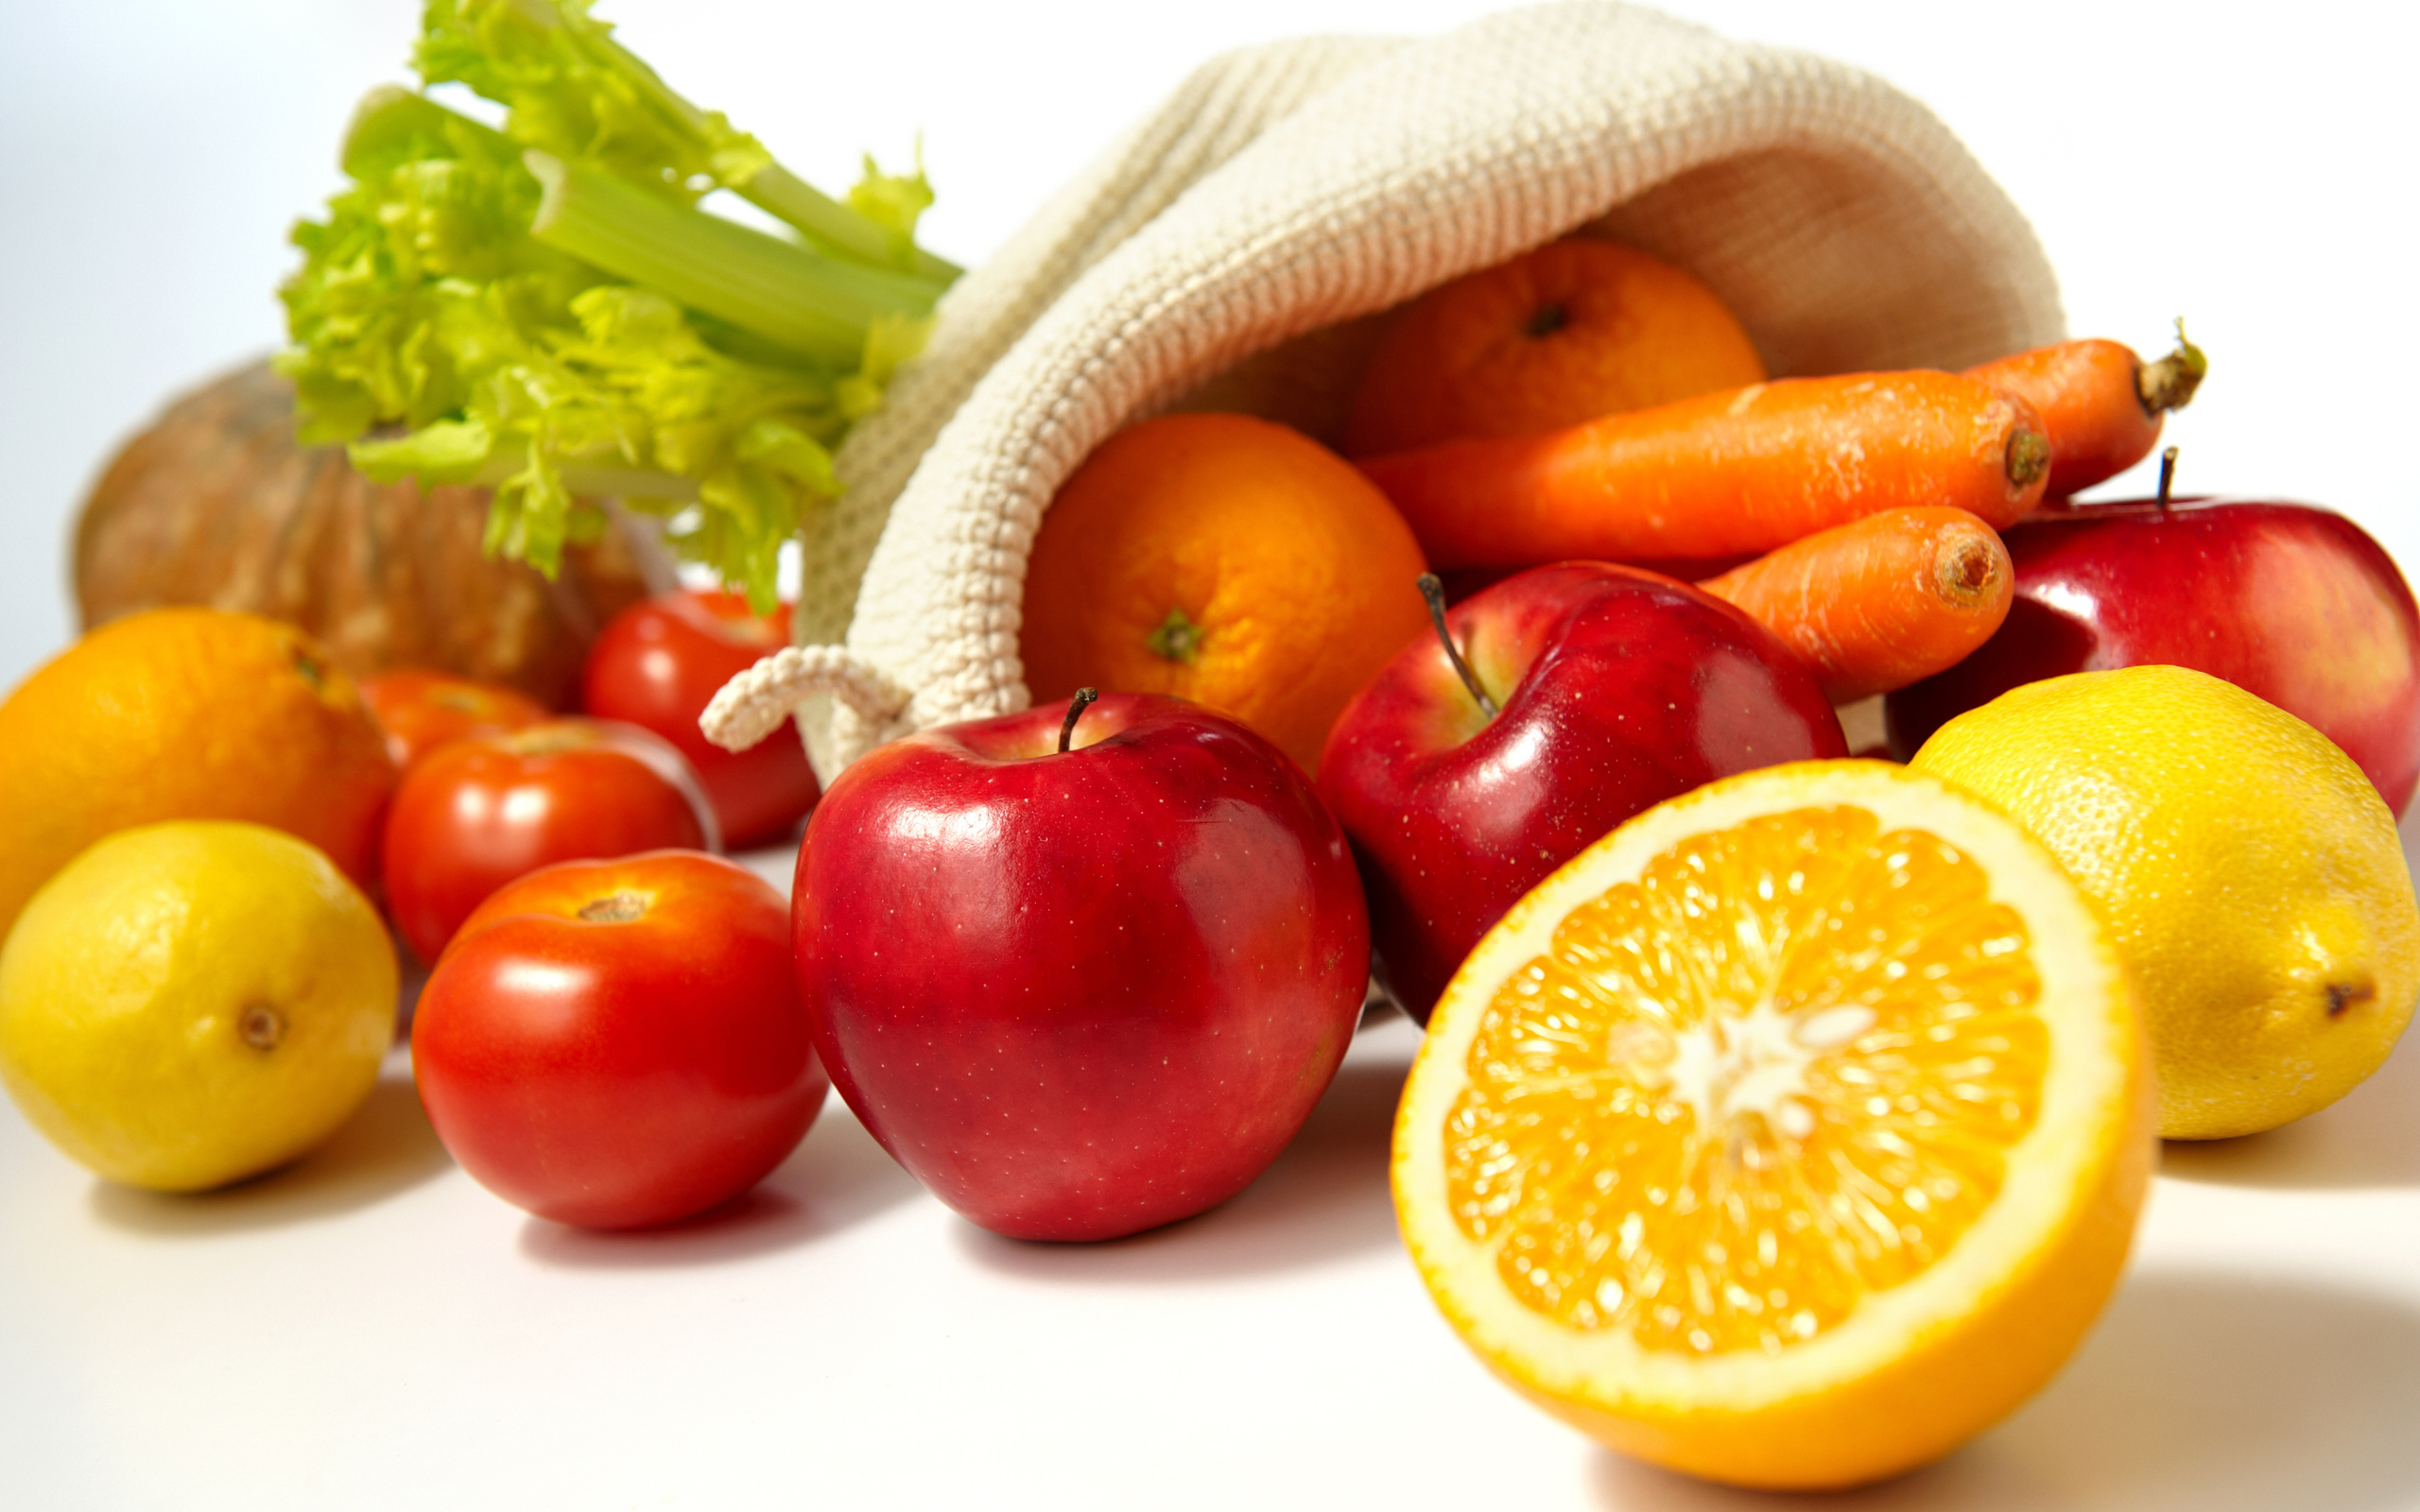 HQ Fruits & Vegetables Background Images